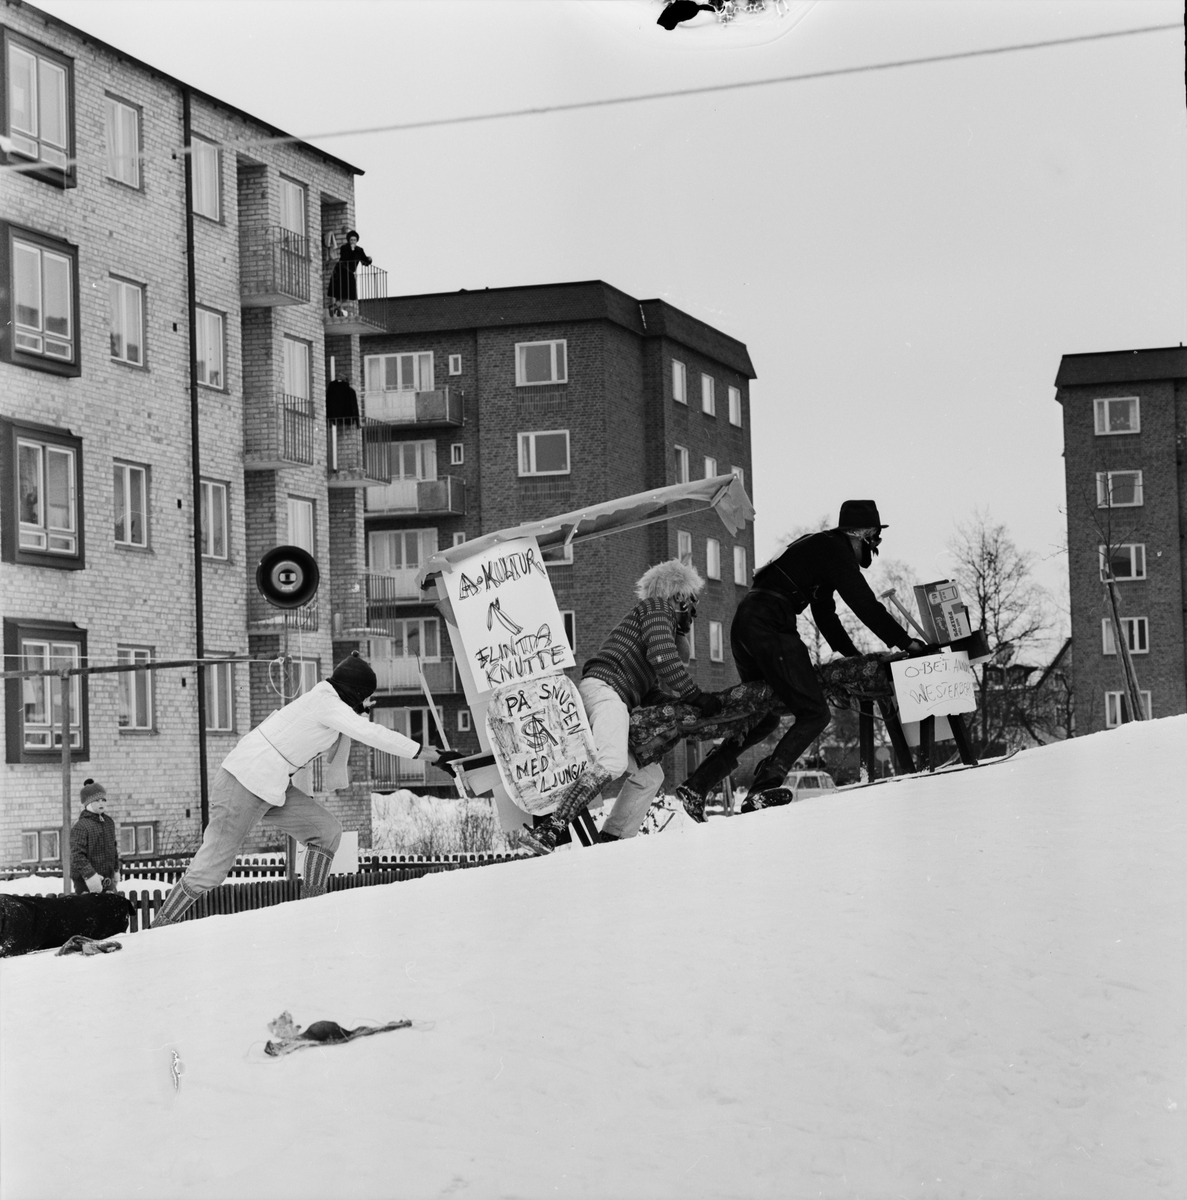 Studentliv - "Birkarlarenneth blev seger i snö", Uppsala 1963